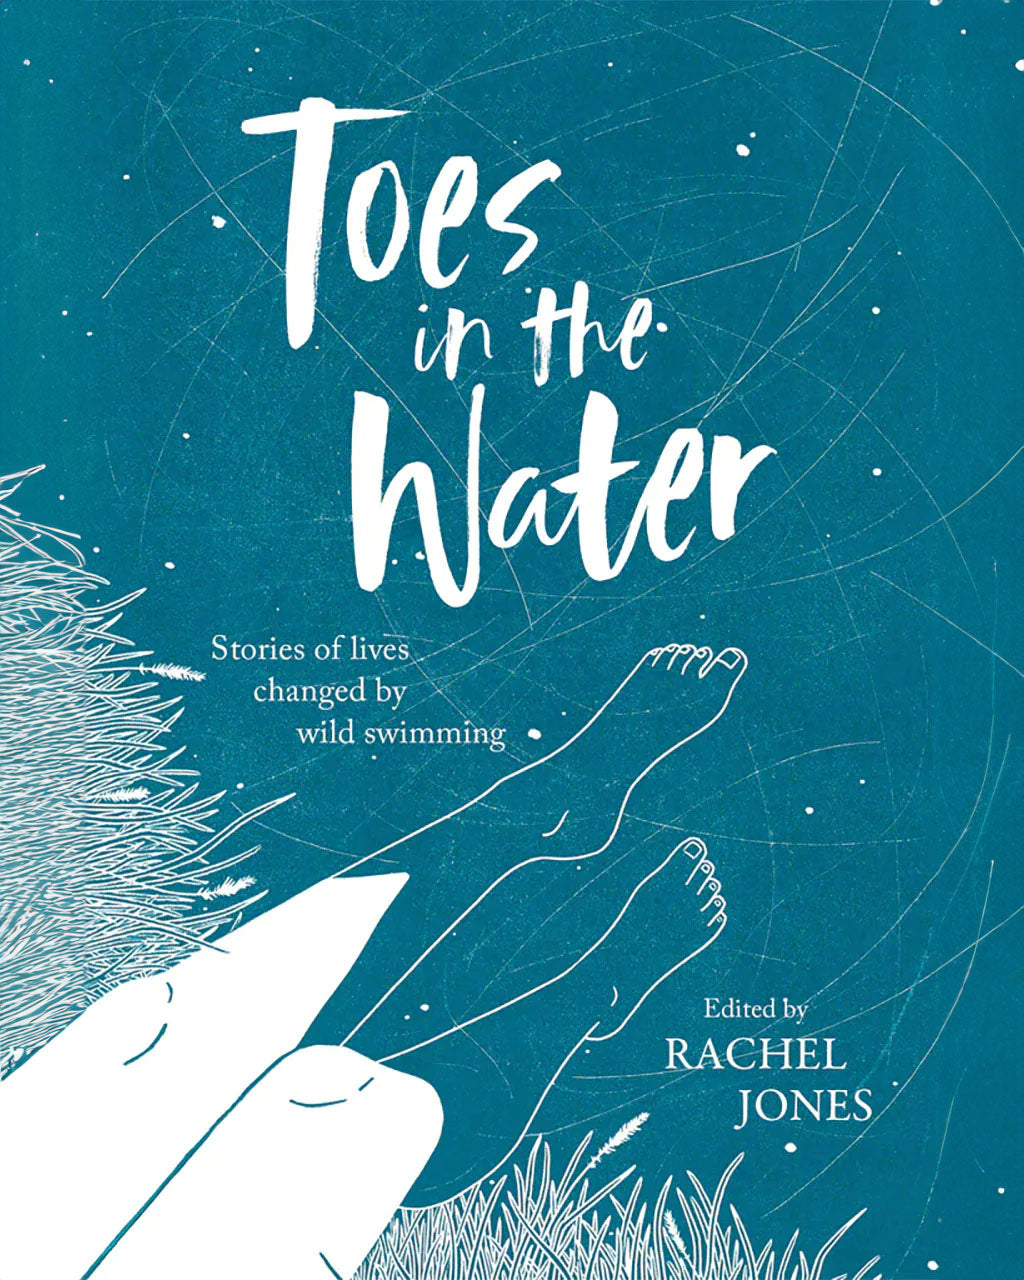 Toes in the Water by Rachel Jones